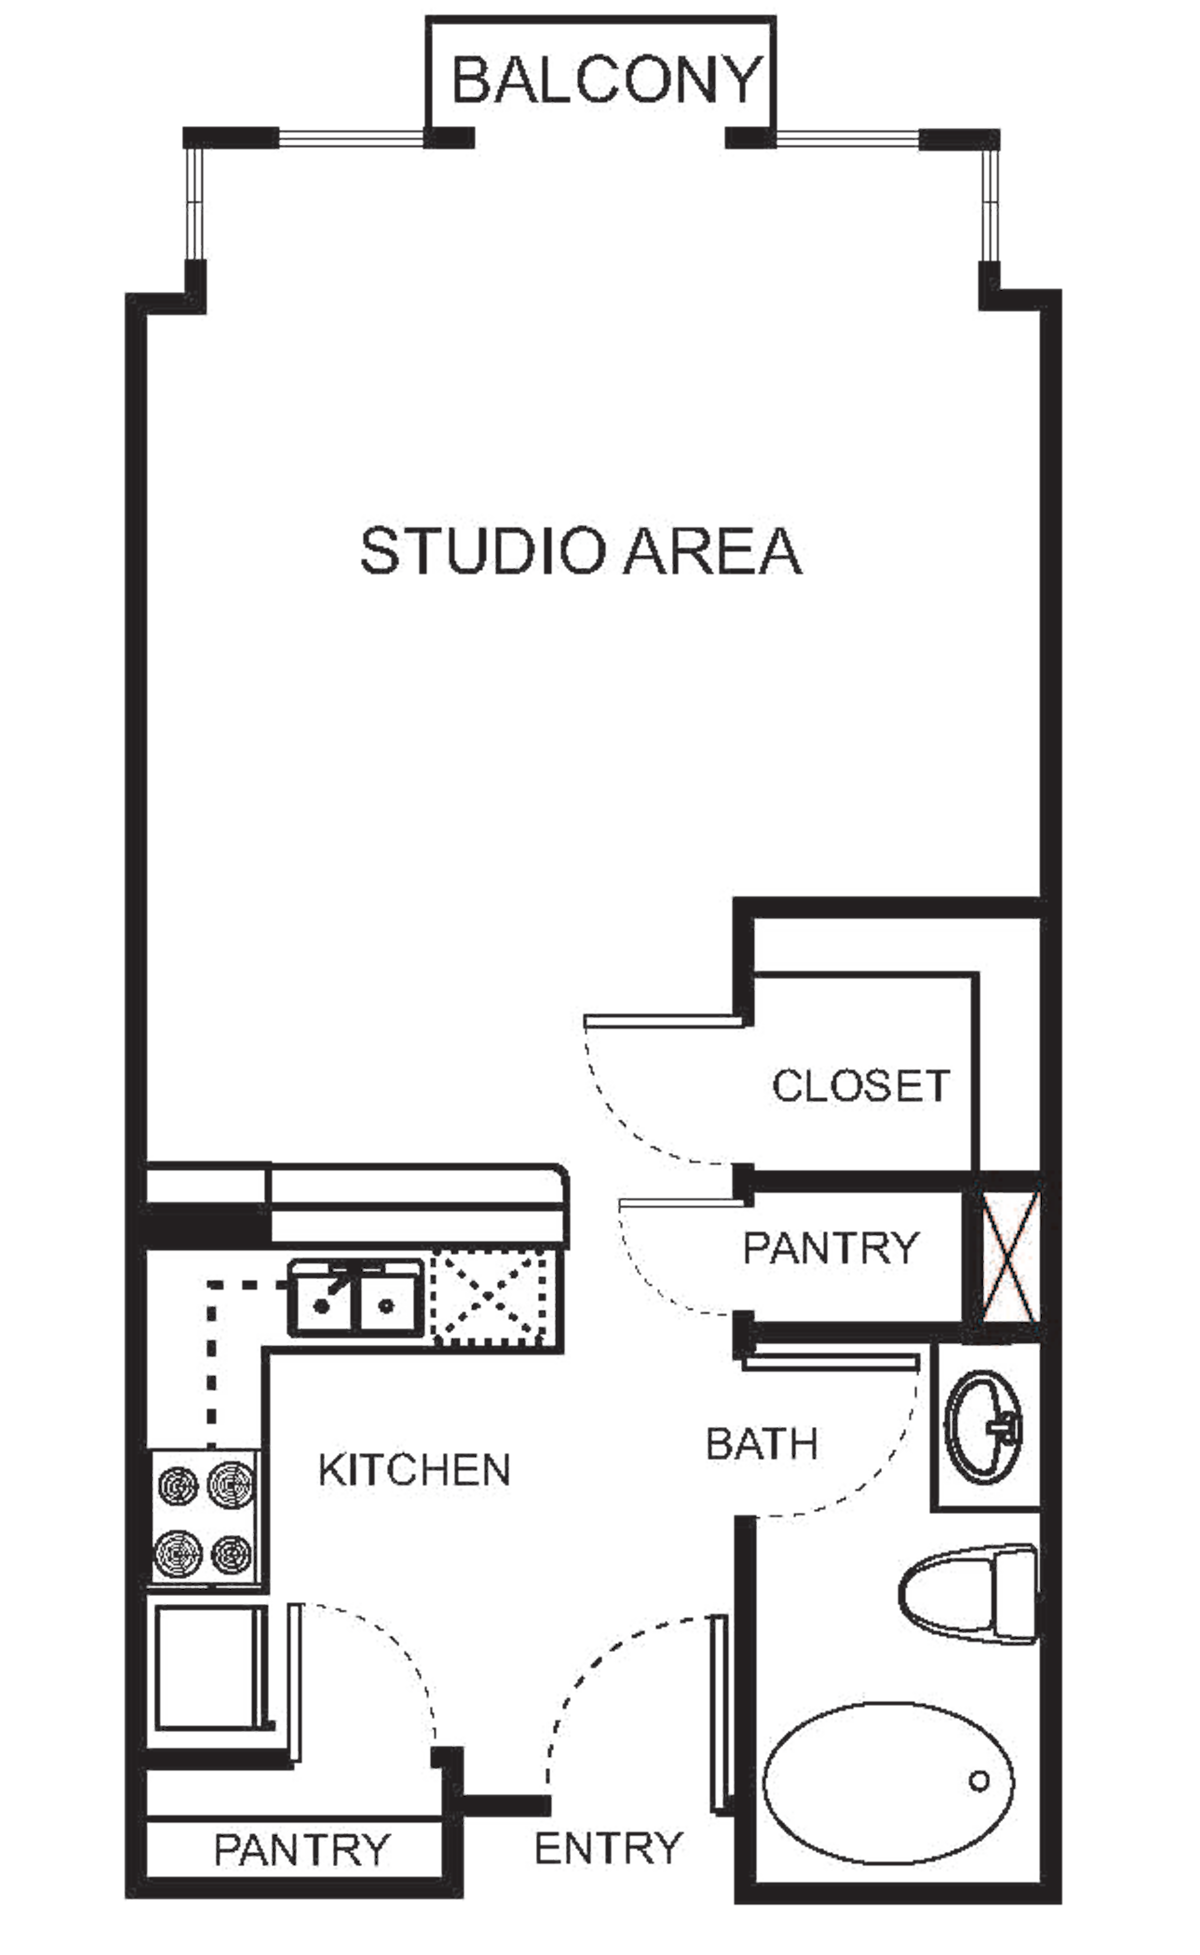 Floorplan diagram for S0 Studio, showing Studio